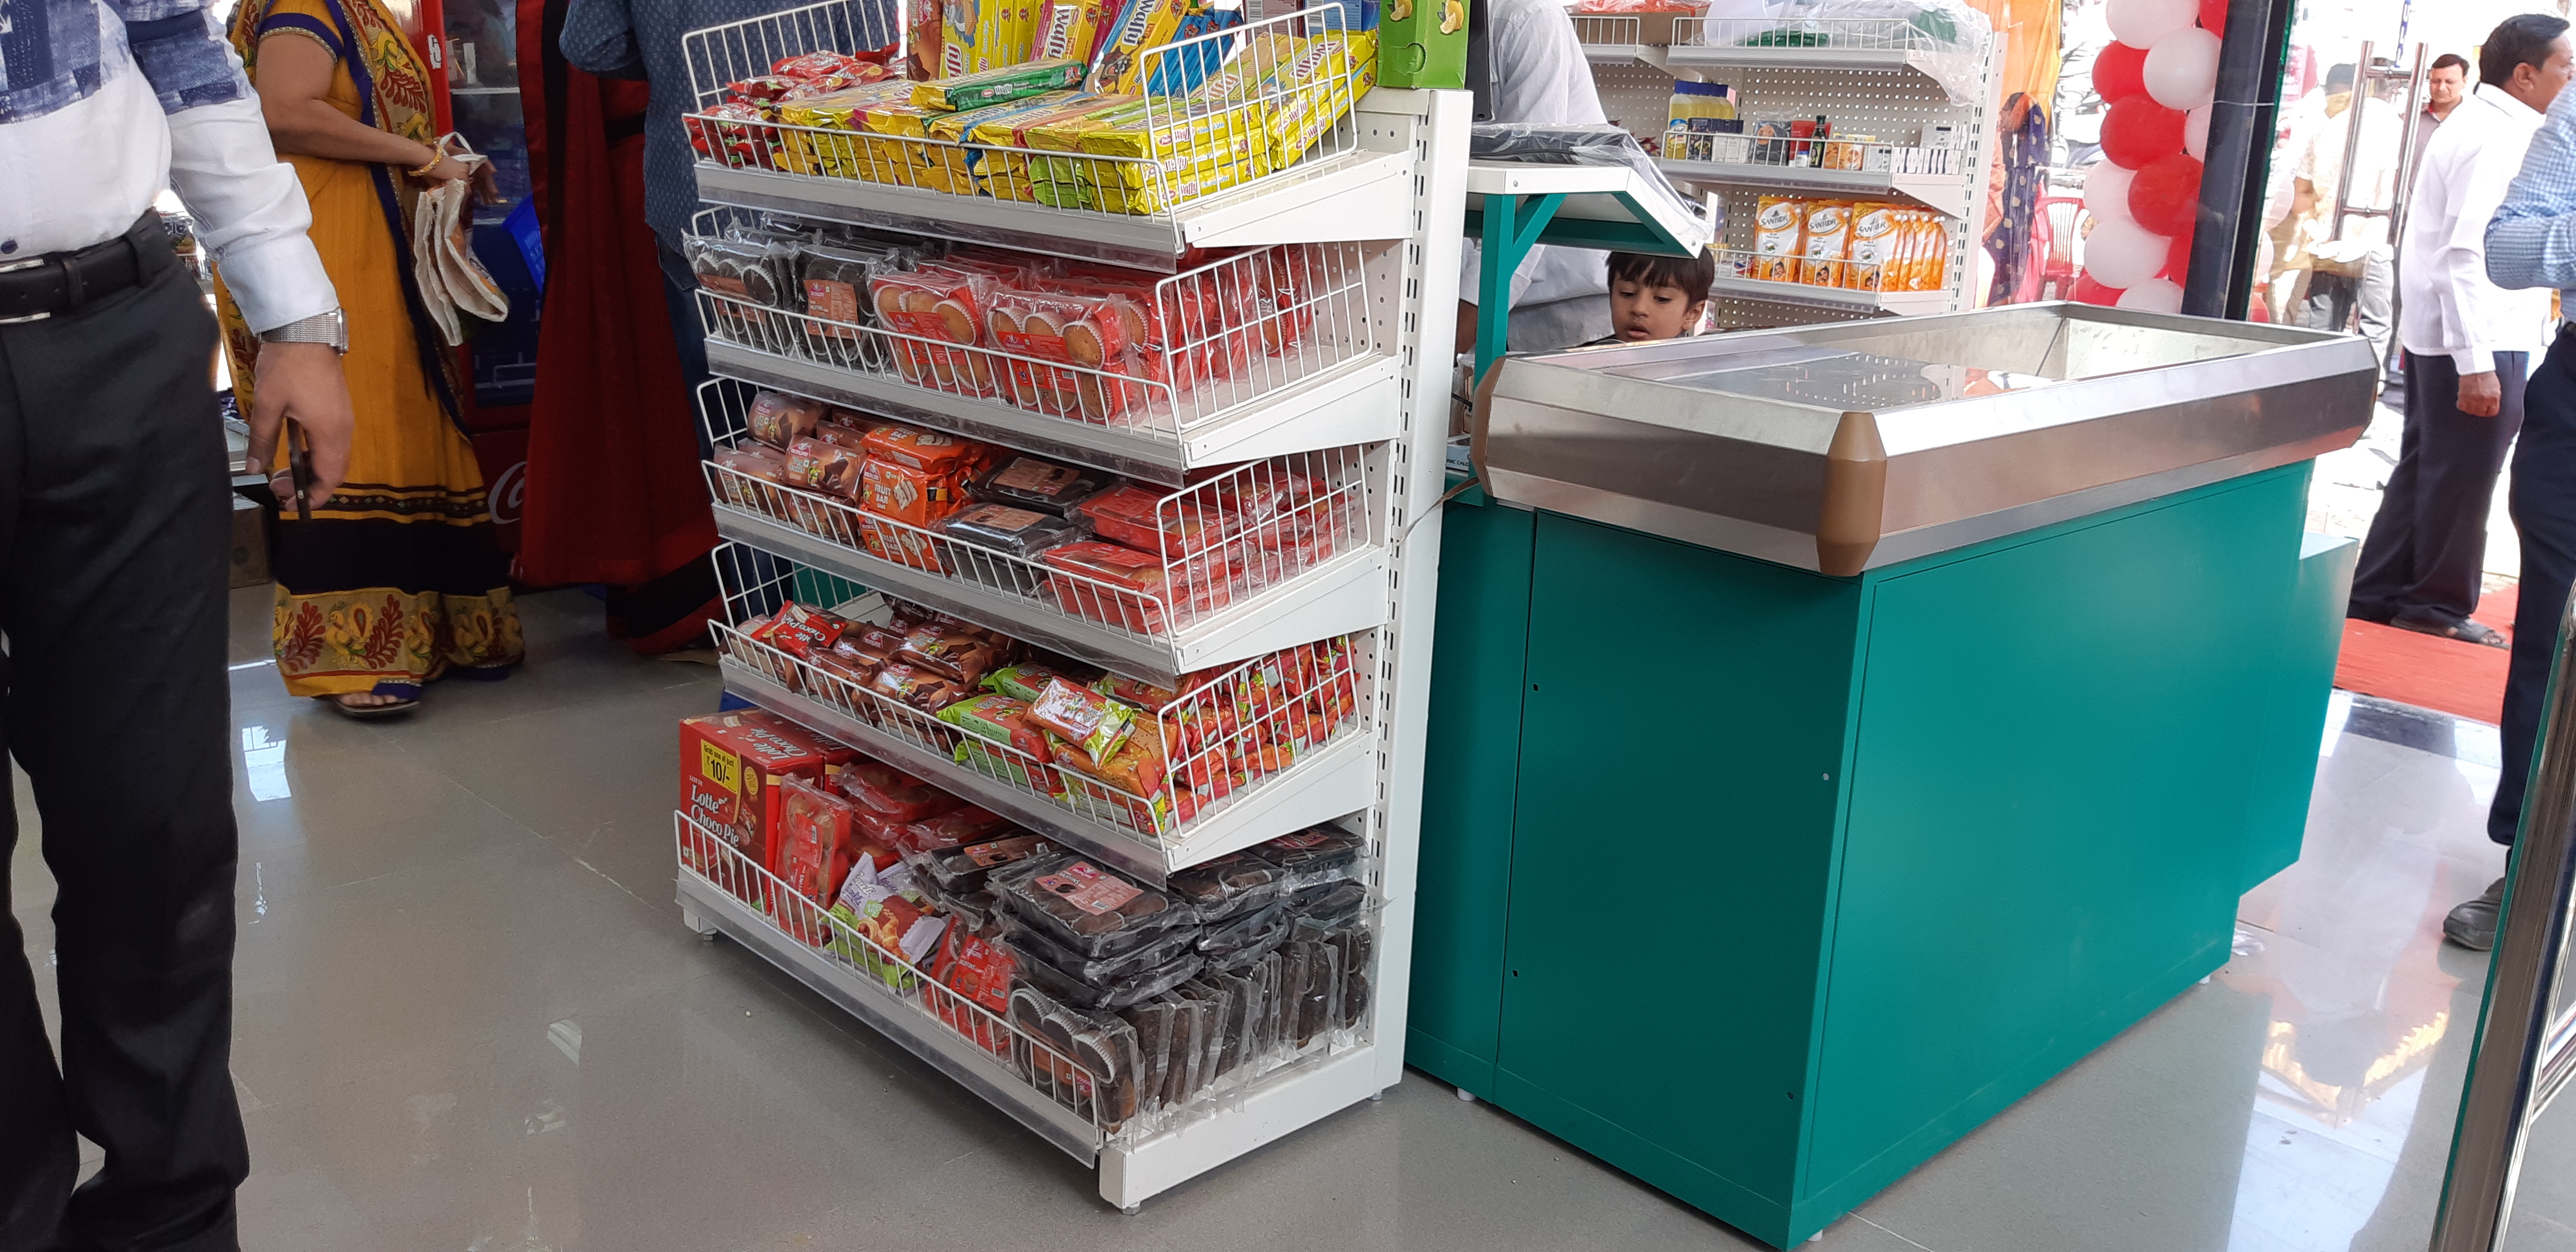 Supermarket Display Racks